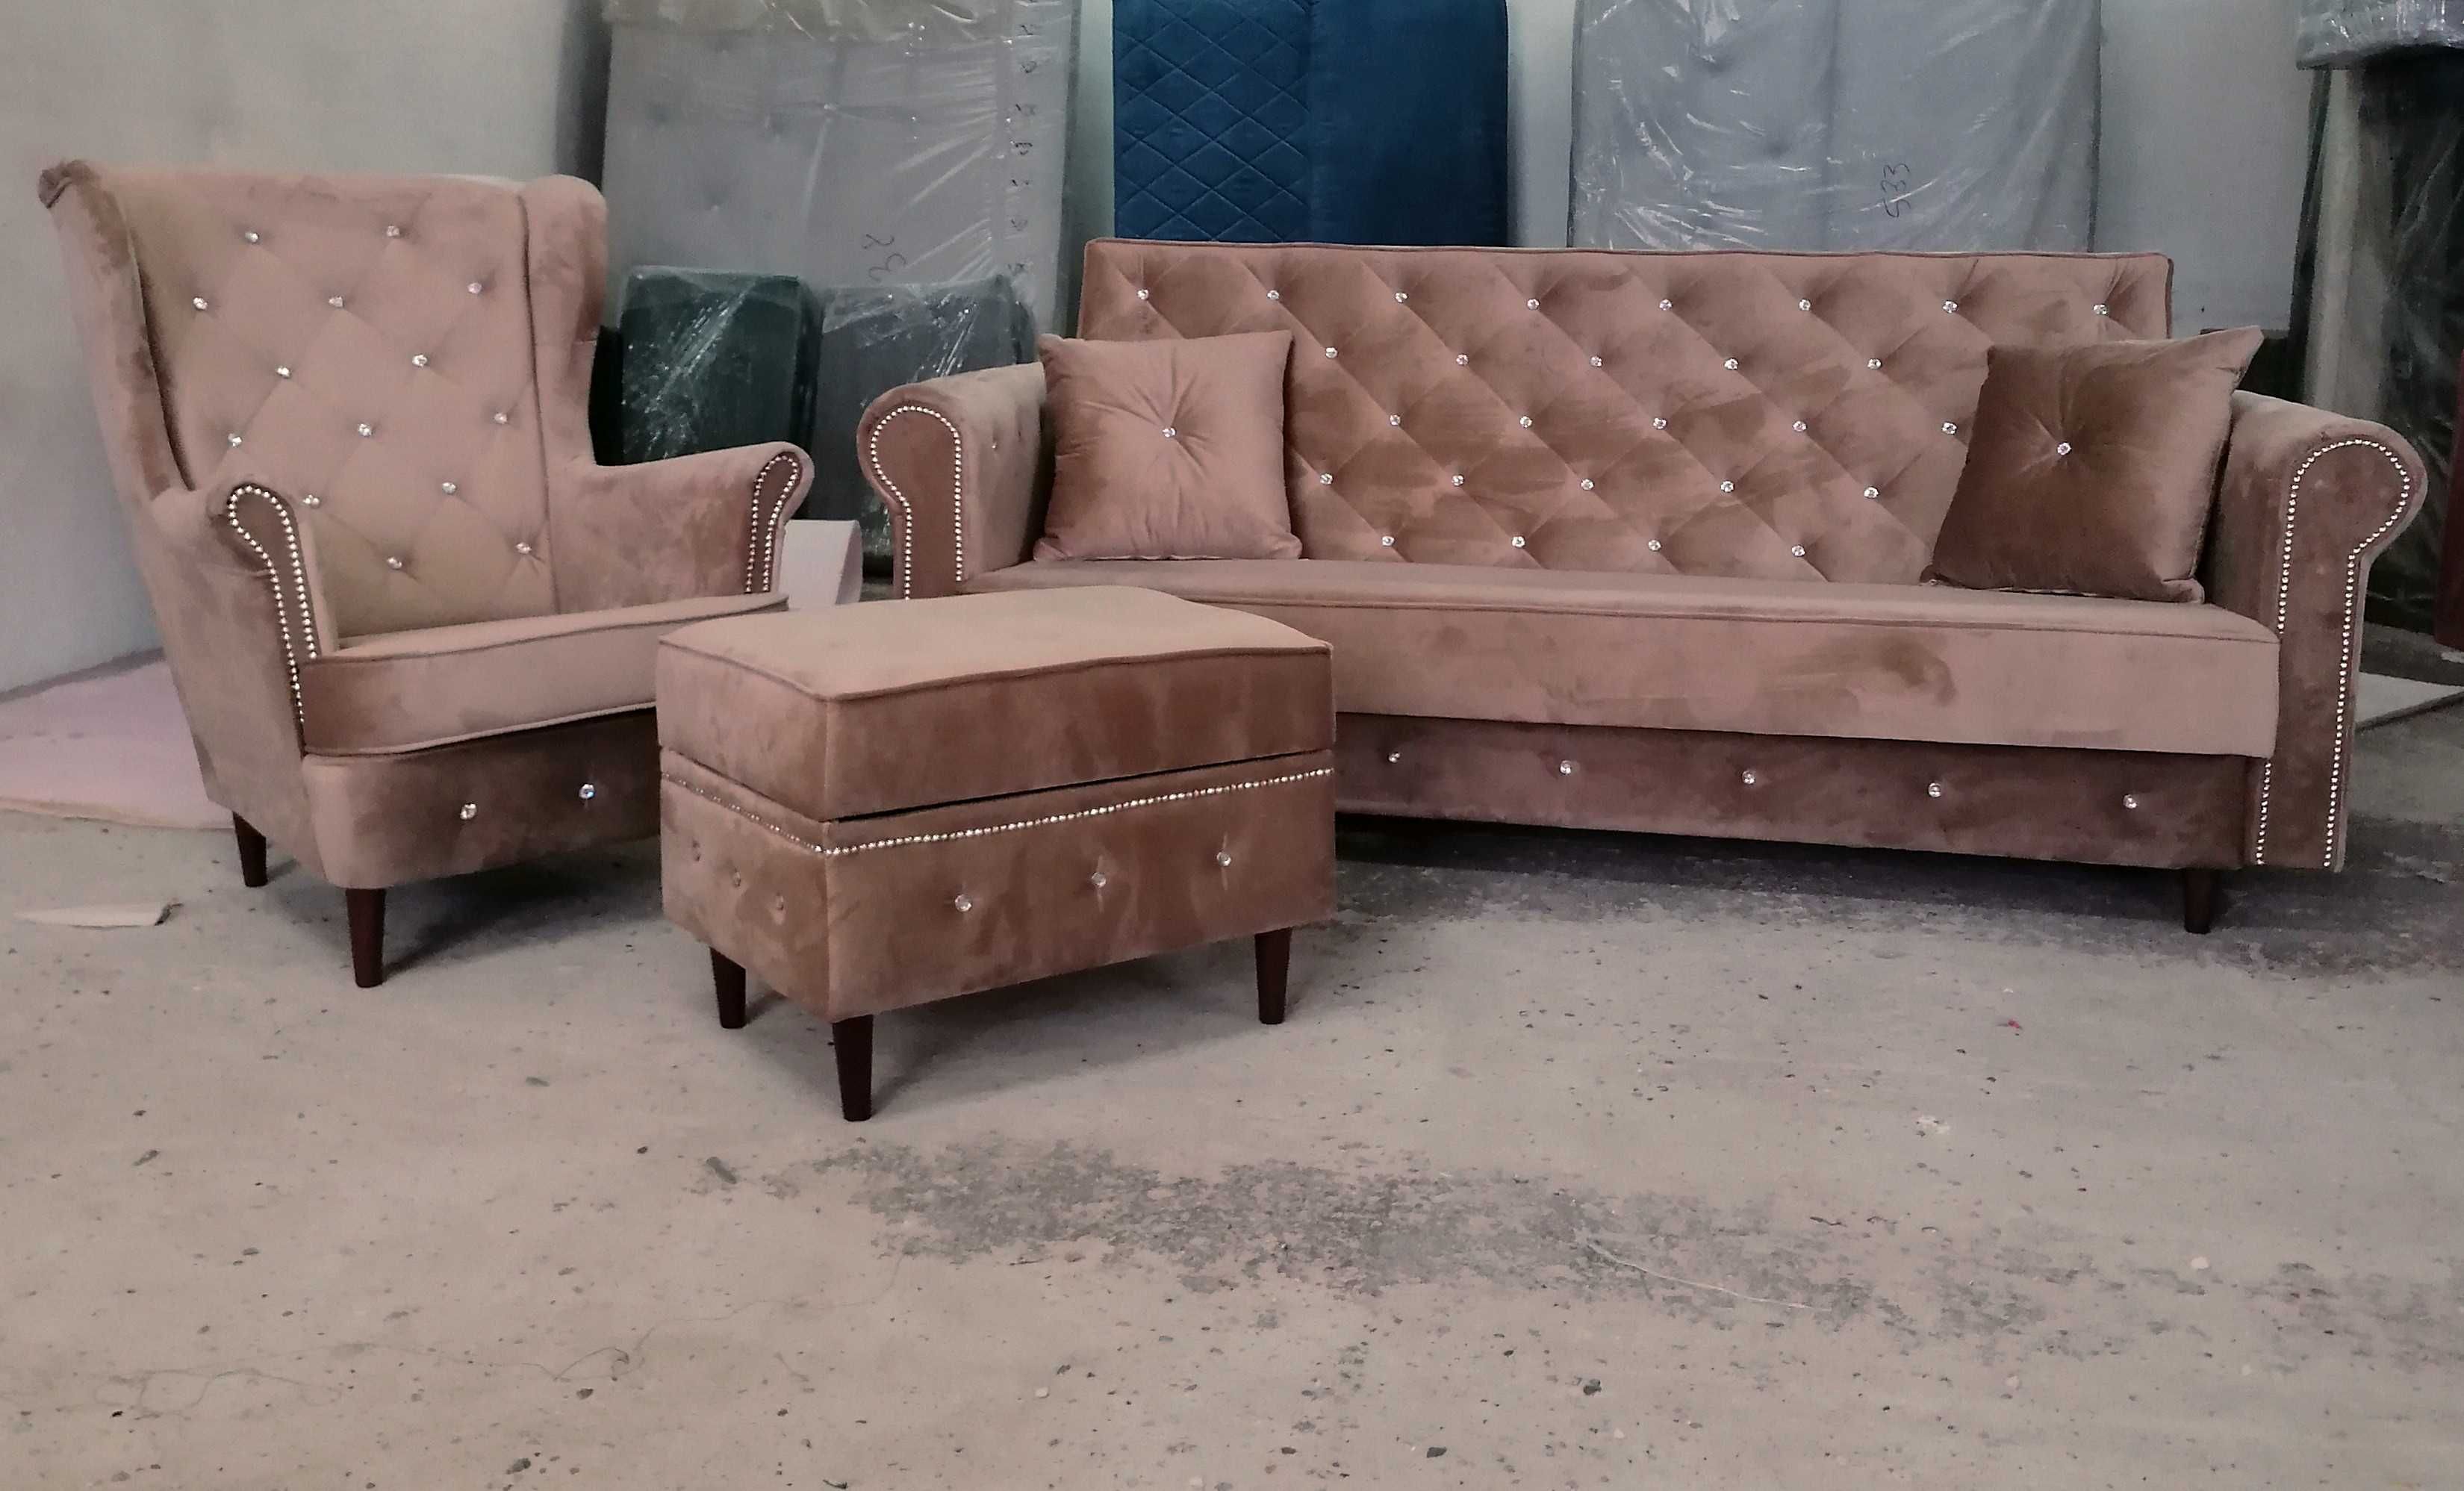 RATY komplet zestaw Chesterfield sofa rozkładana wersalka fotel uszak